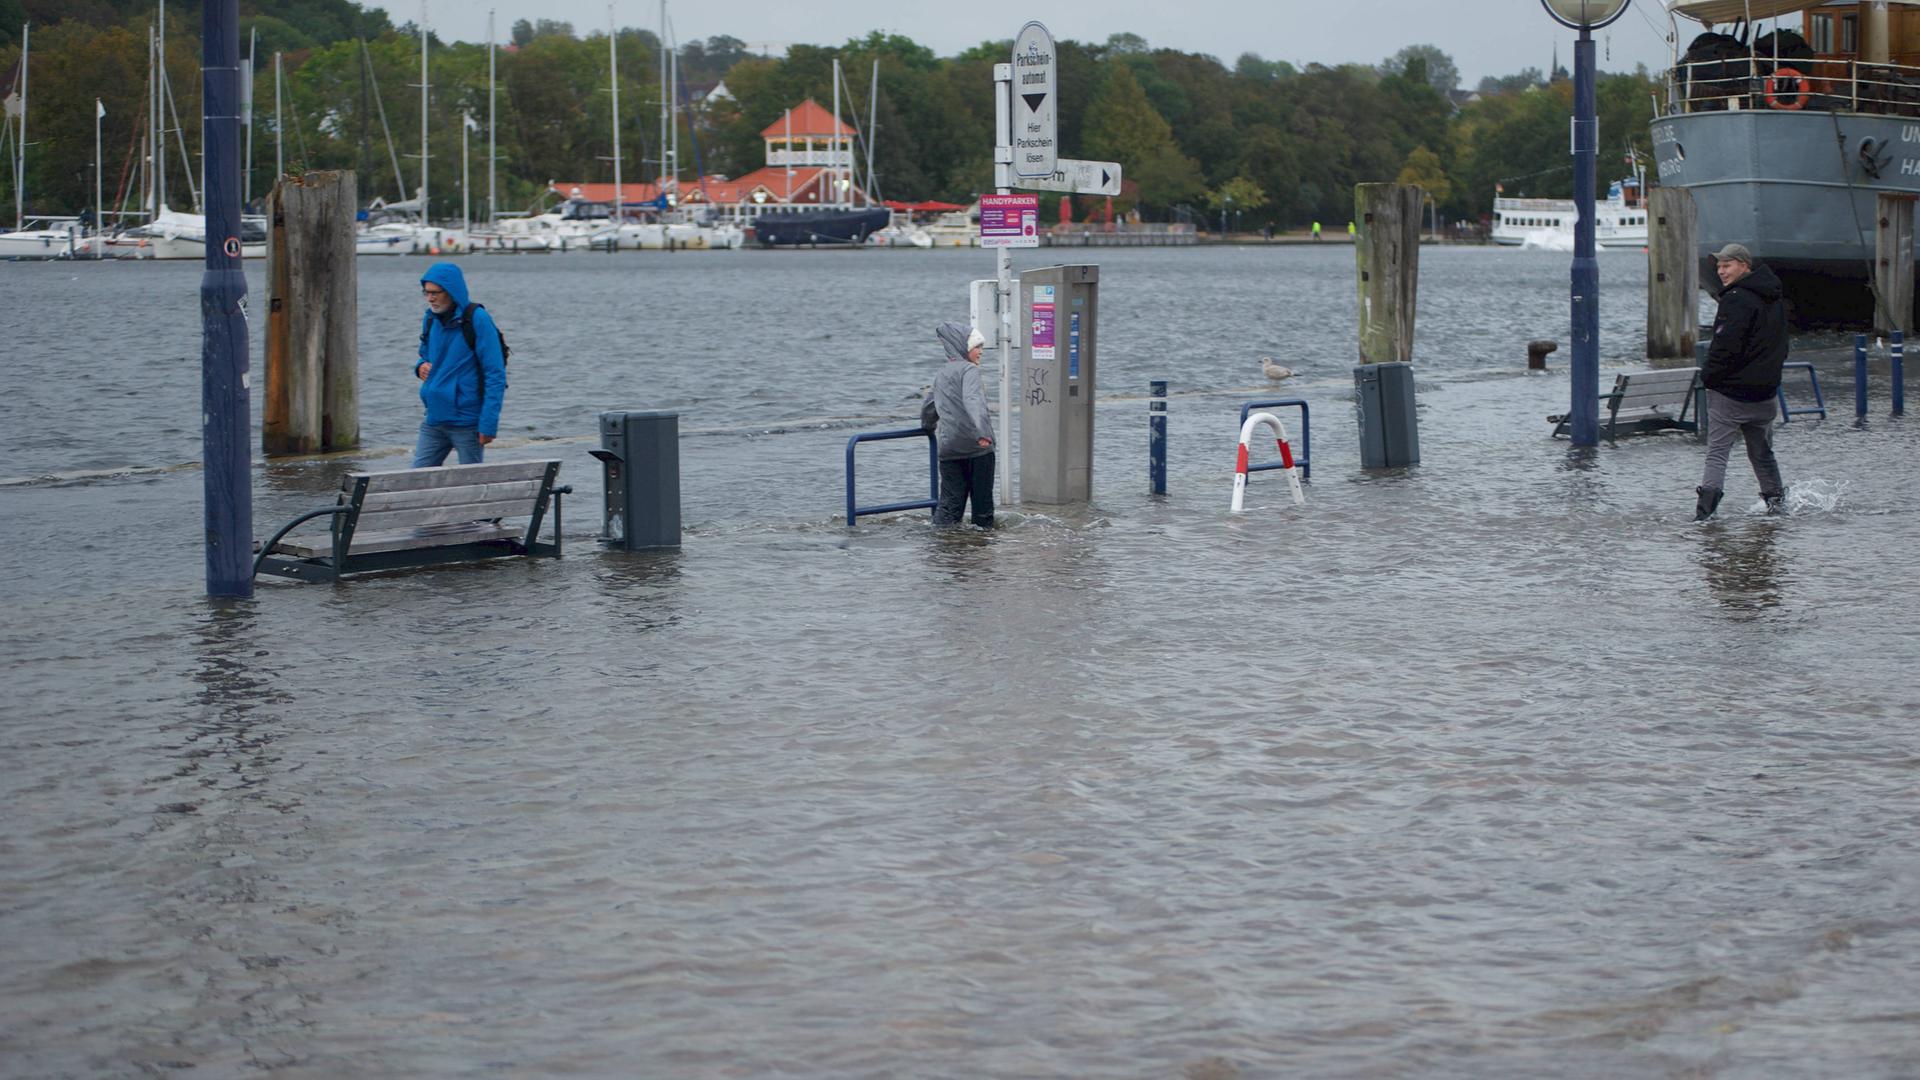 Im Hafen von Flensburg ist das Wasser über die Kaikante gestiegen. Zwei Männer waten durch das Wasser. Eine Bank steht bis zur Sitzfläche im Wasser.